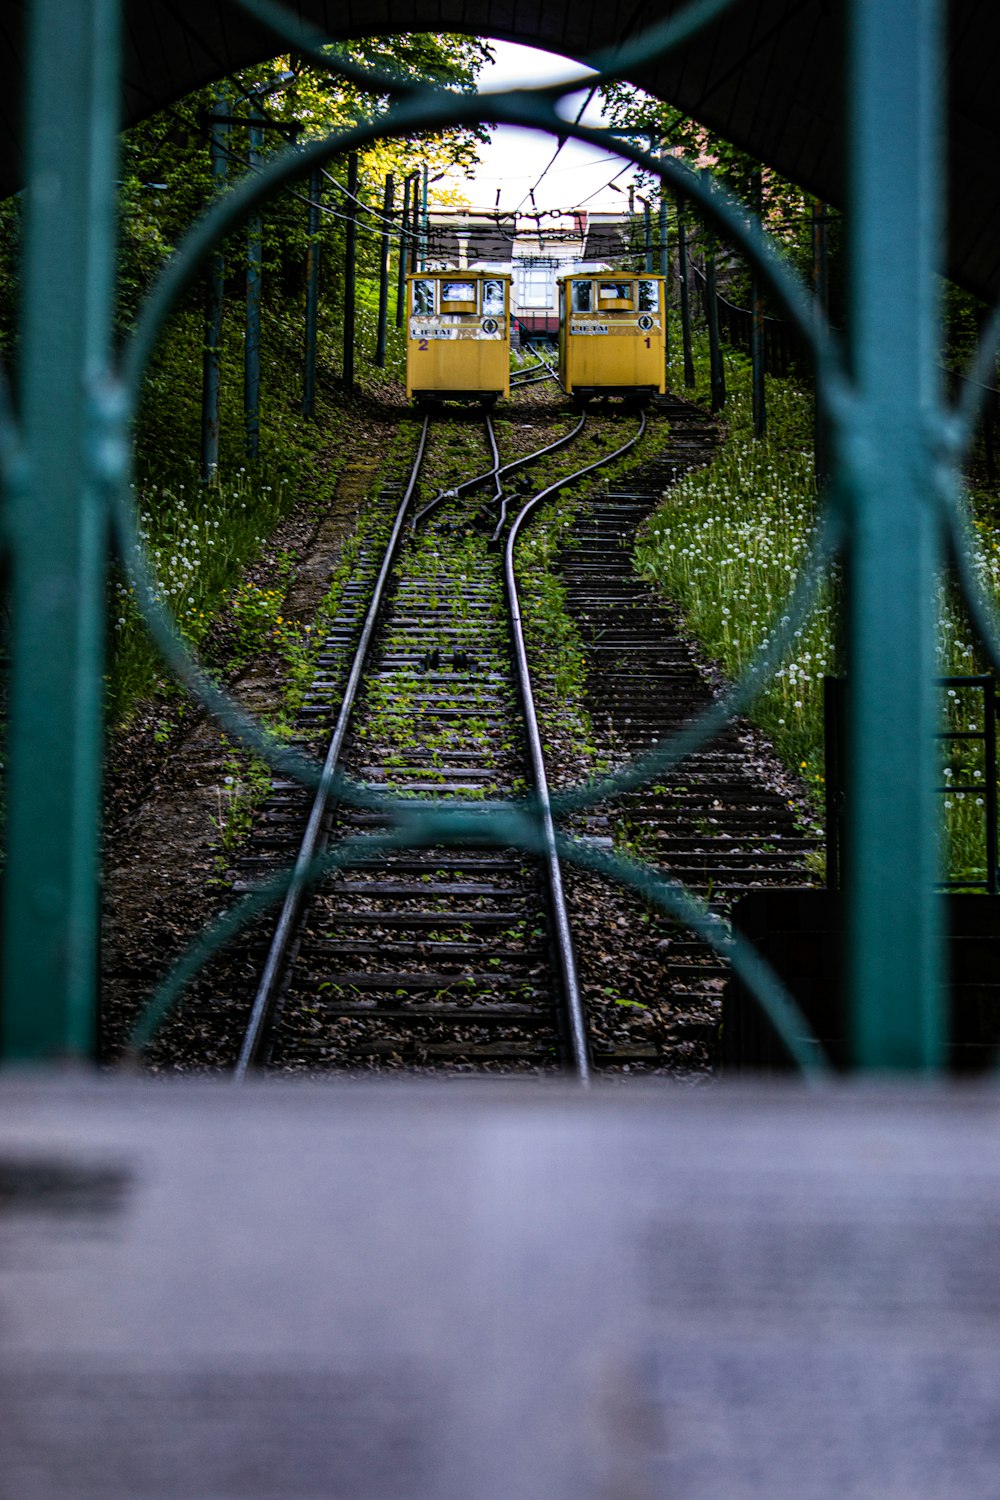 Train jaune sur les voies ferrées